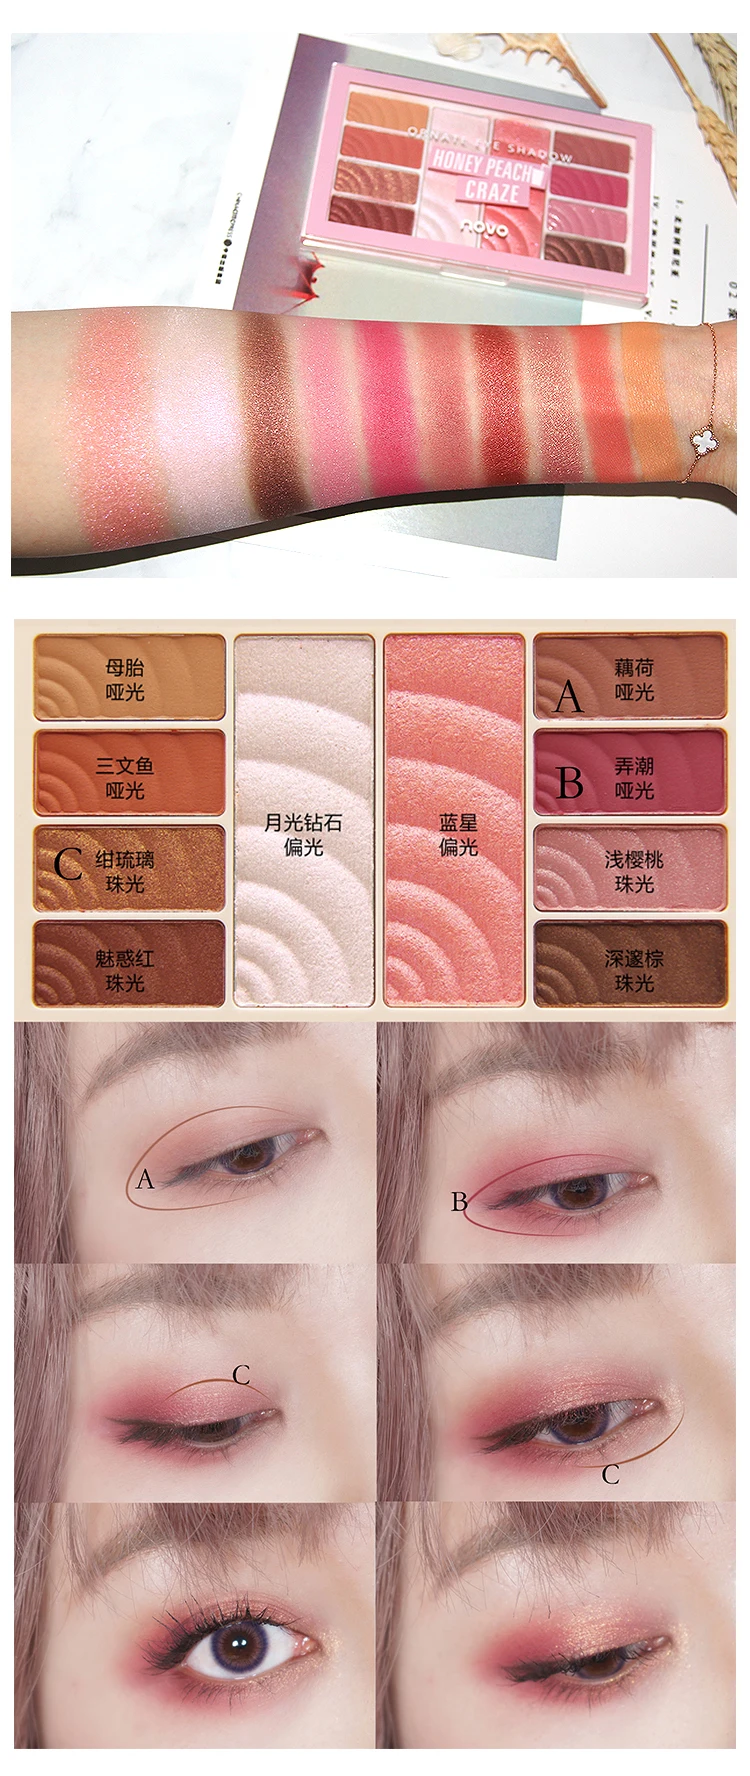 NOVO модные новые 10 цветов Тени для век Палитра Shimmer водонепроницаемый макияж блеск матовые обнаженные тени для век корейский стиль косметика